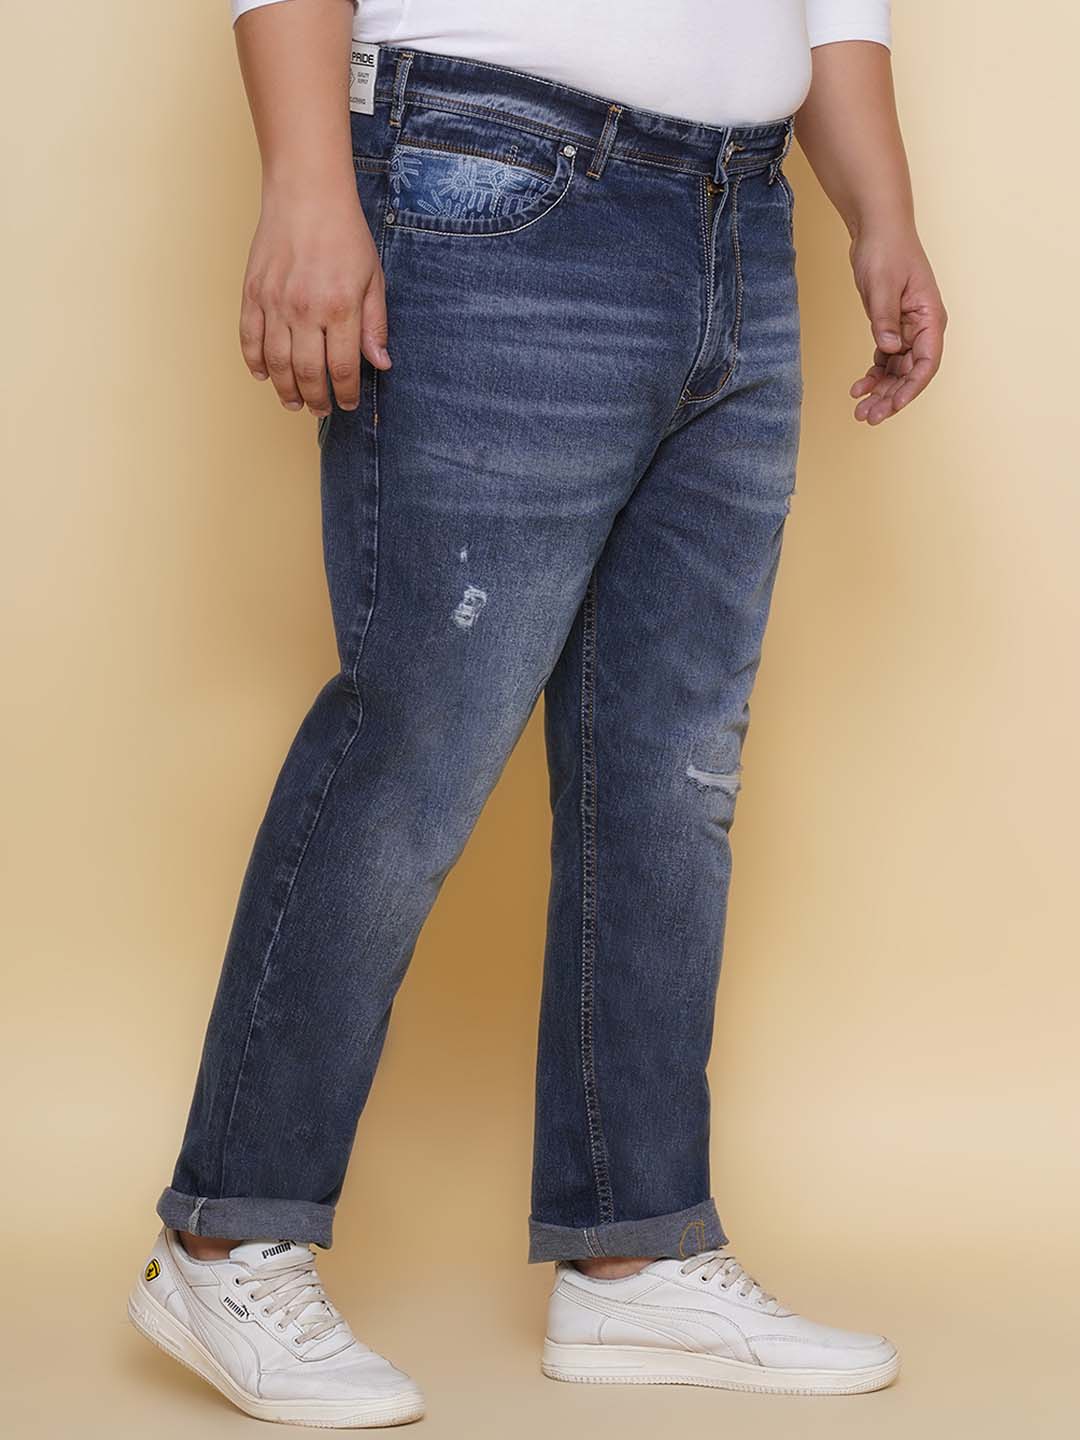 bottomwear/jeans/EJPJ25133/ejpj25133-3.jpg